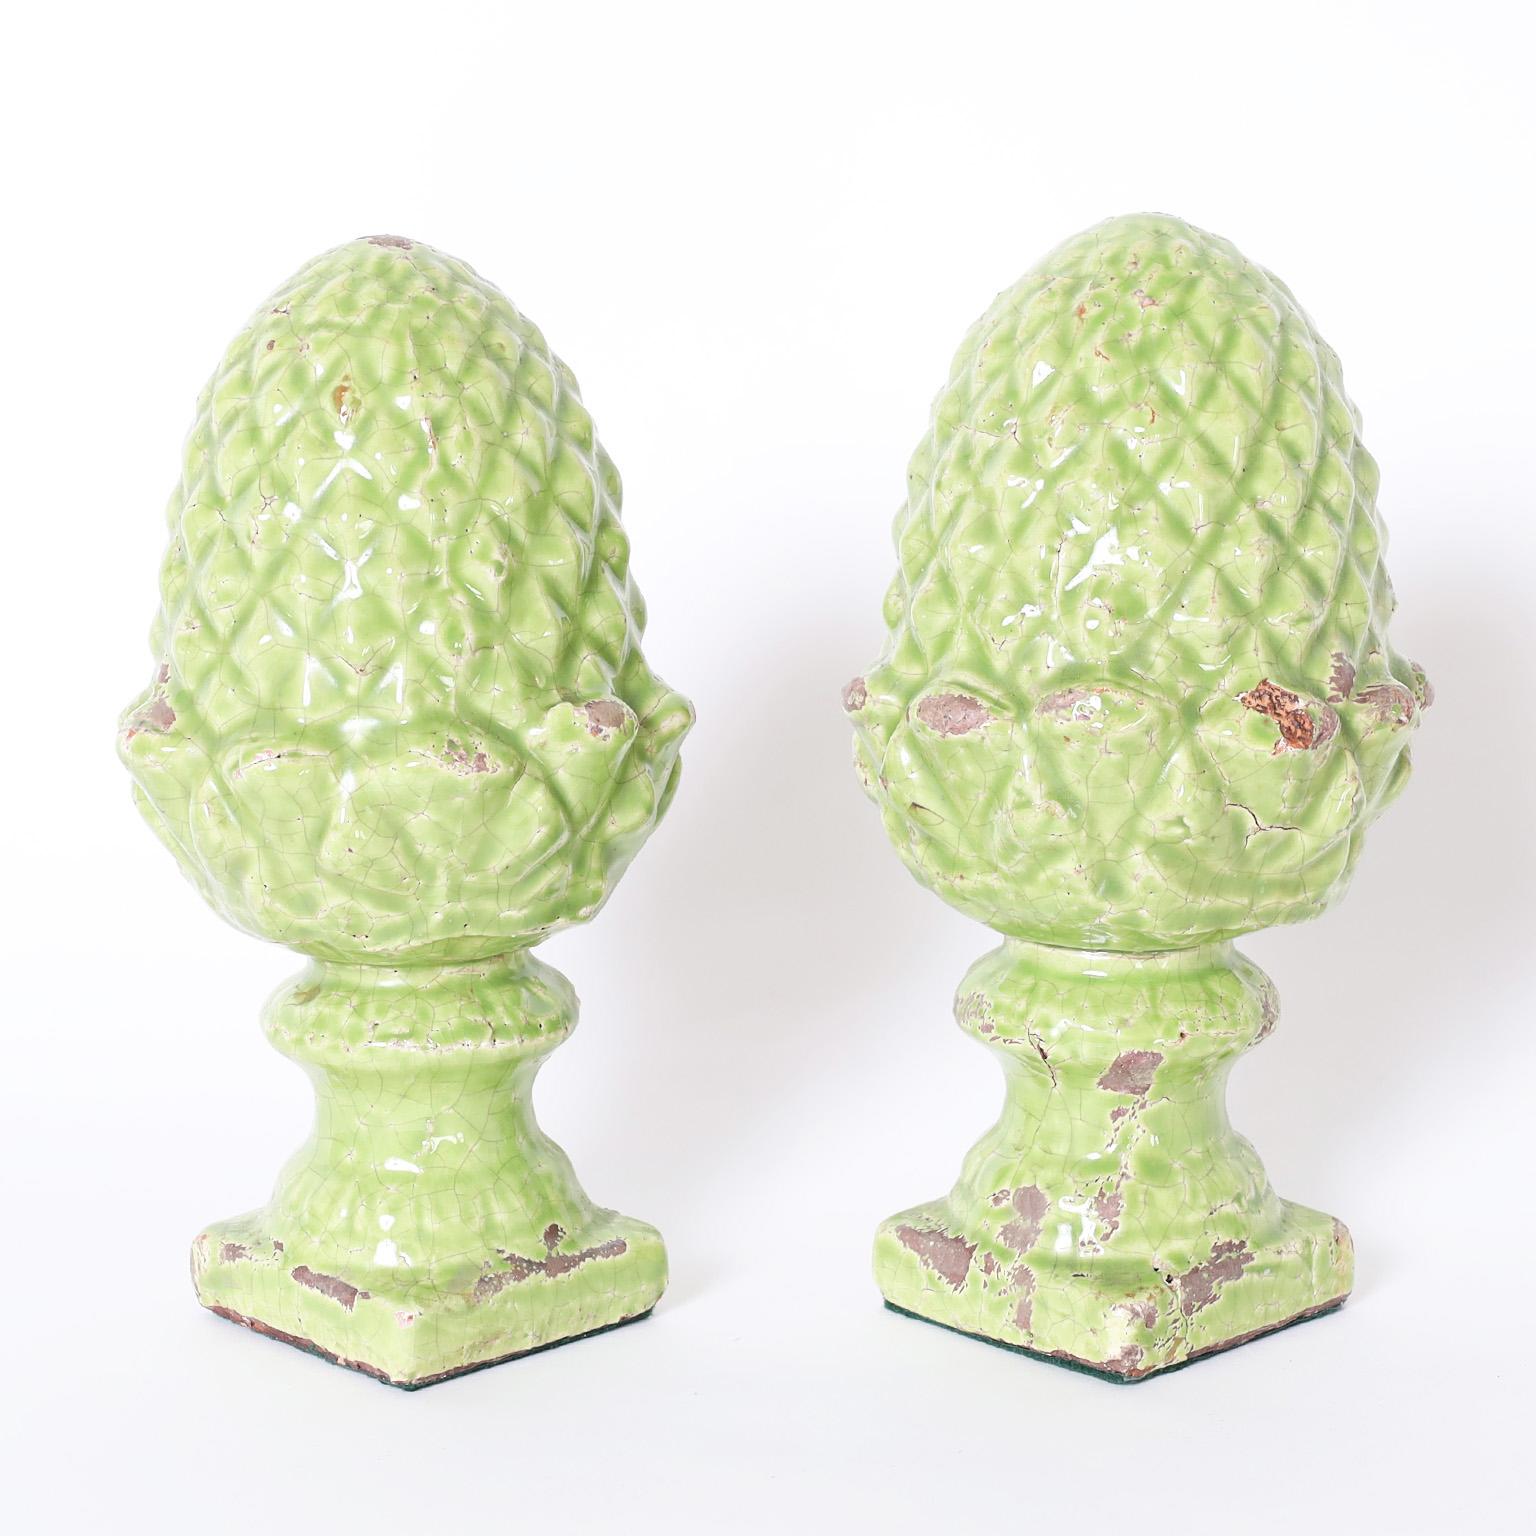 Hervorragendes Paar englischer Ananas-Finials aus Terrakotta, verziert in einem reizvollen Grün und glasiert, jetzt perfekt abgenutzt und mit Craquelé.